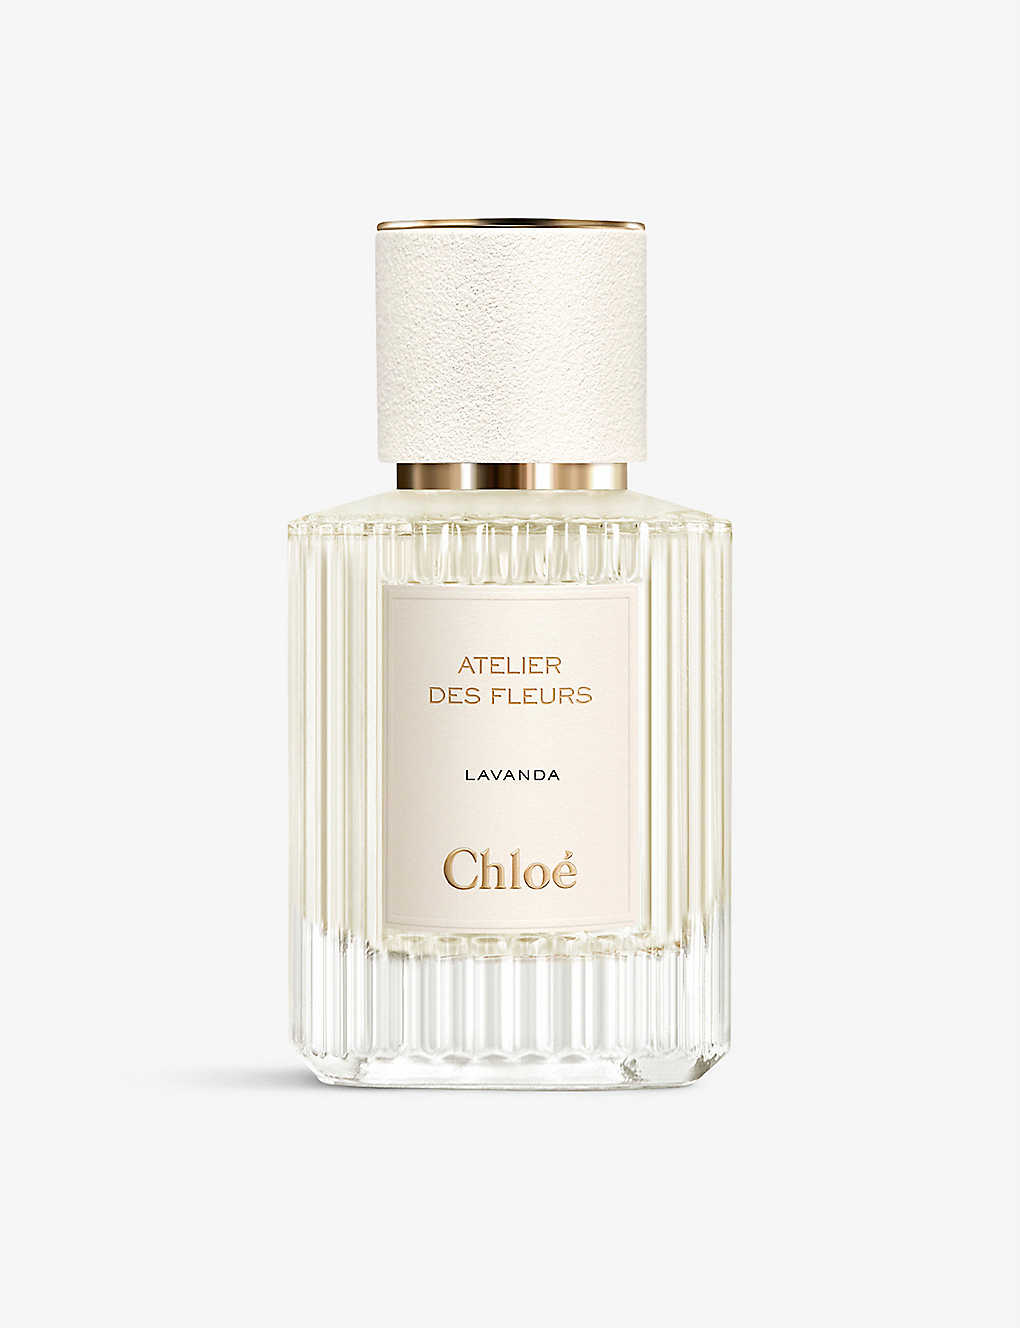 Chloé Atelier Des Fleurs Lavanda Eau De Parfum